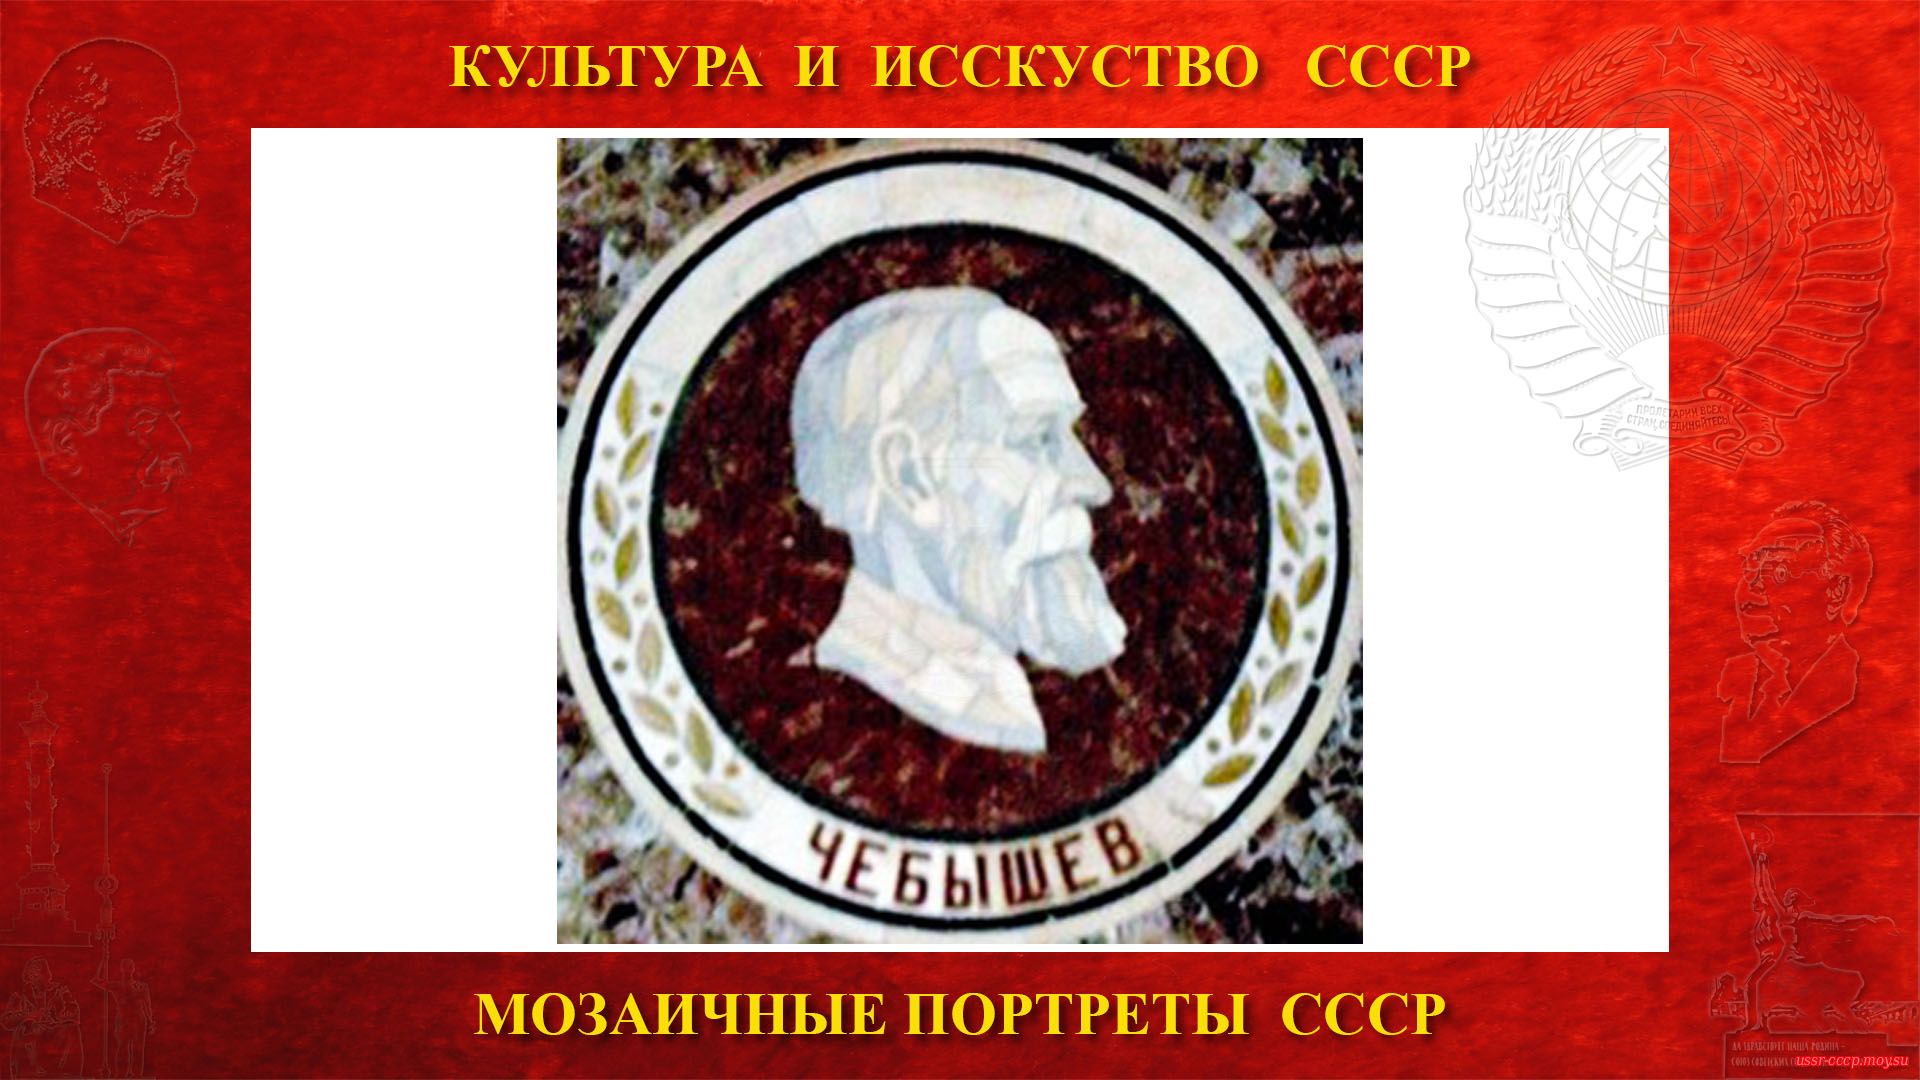 Мозаичный портрет Чебышеву П.Л. на Ленинских горах в ГЗ МГУ (Москва 1953) (повествование)